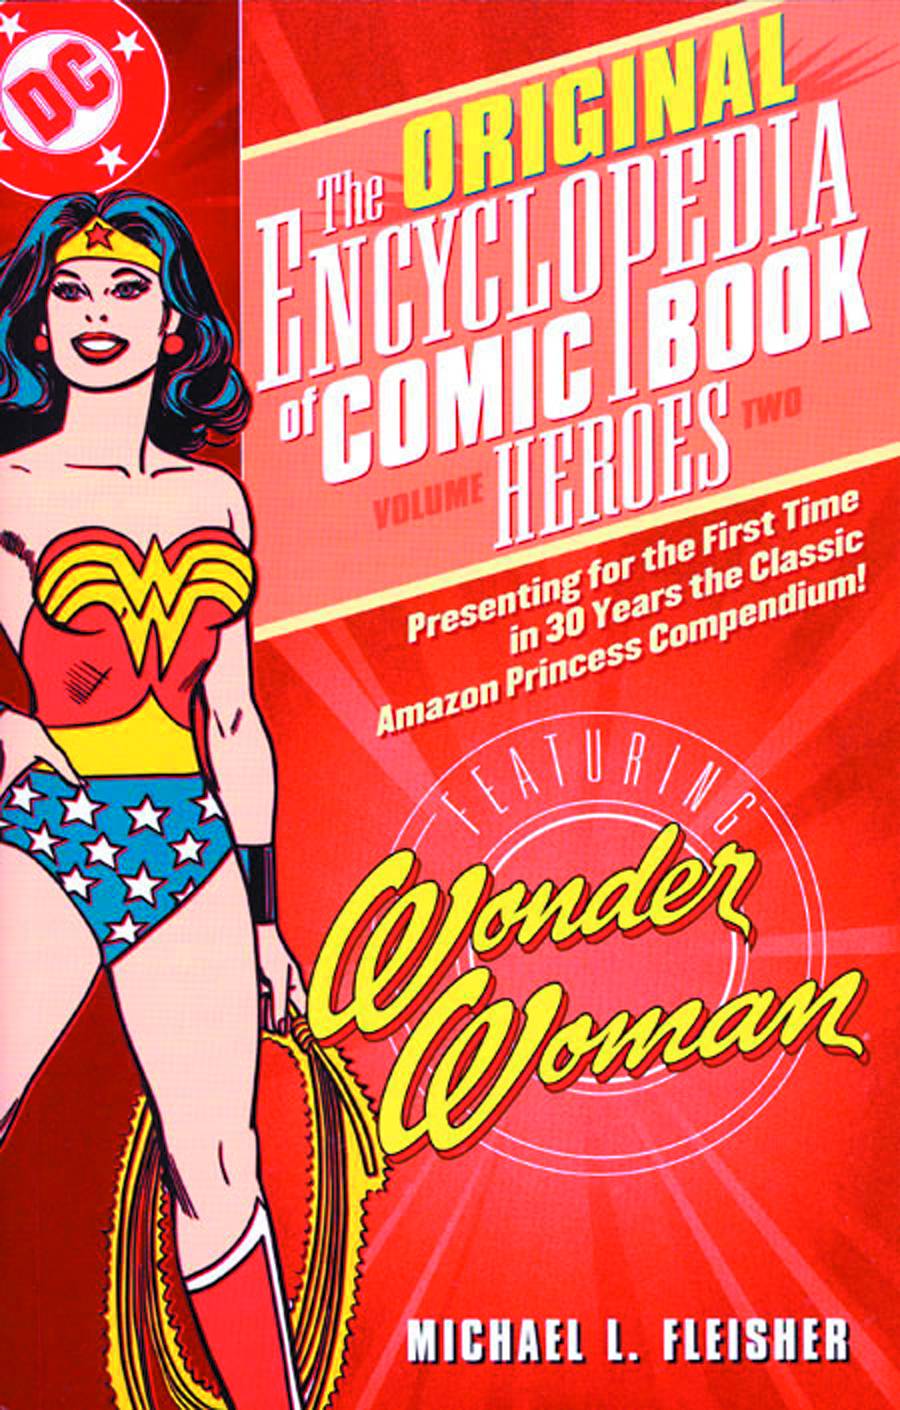 Encyclopedia of Comicbook Heroes Graphic Novel Volume 2 Wonder Woman